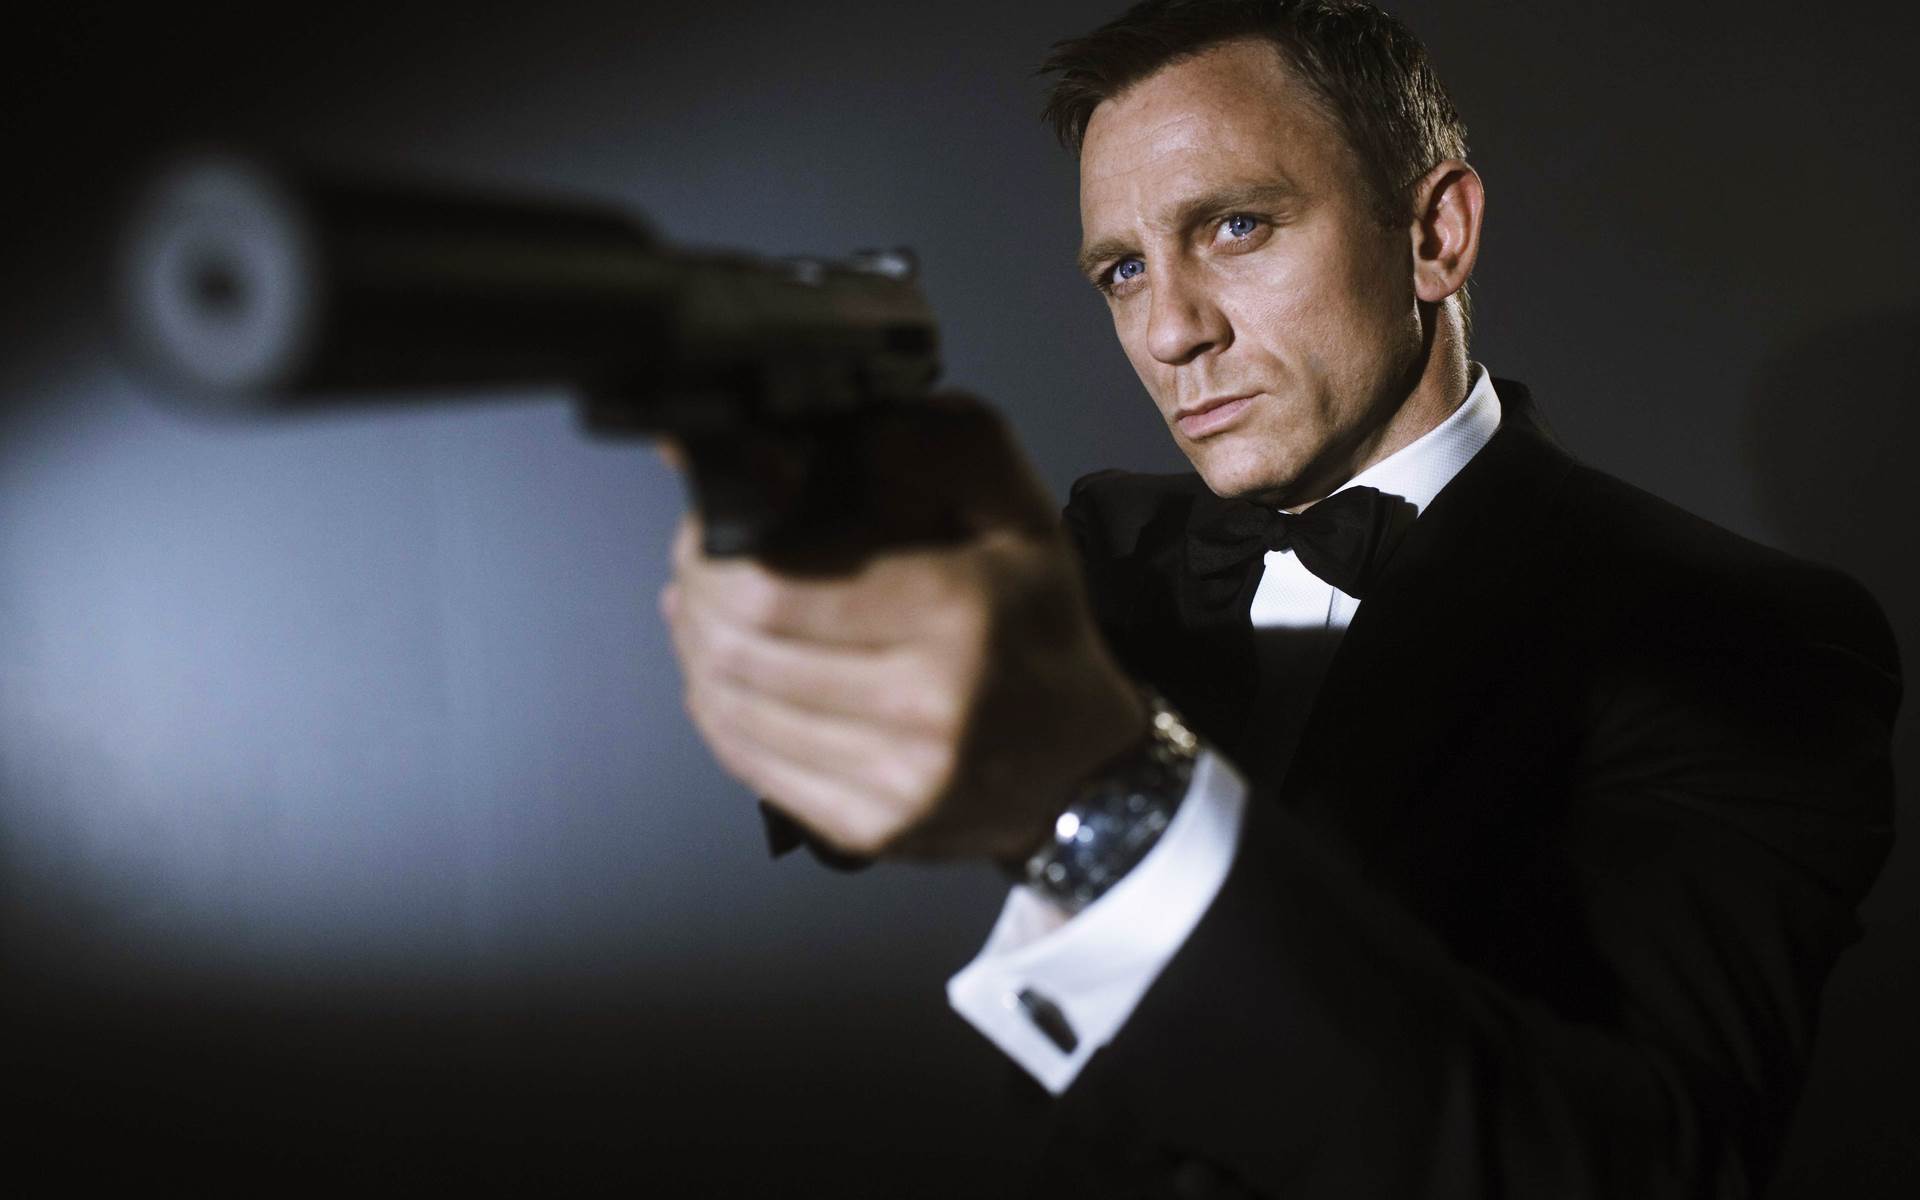 Foto de Bond 25 mostra Daniel Craig malhando com perna imobilizada